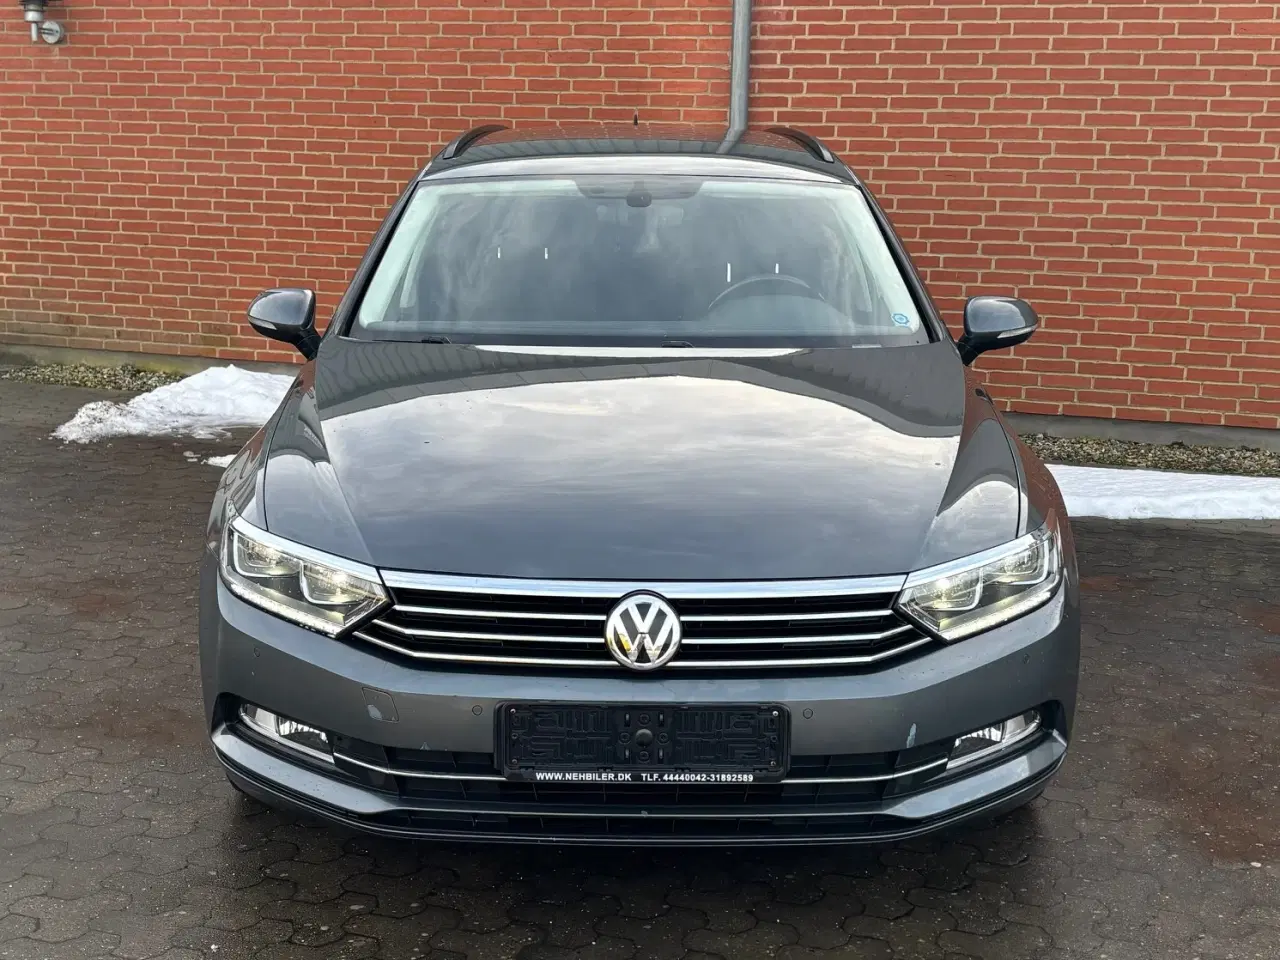 Billede 2 - 2015 Volkswagen passat st car facelift 1,4 tsi 150